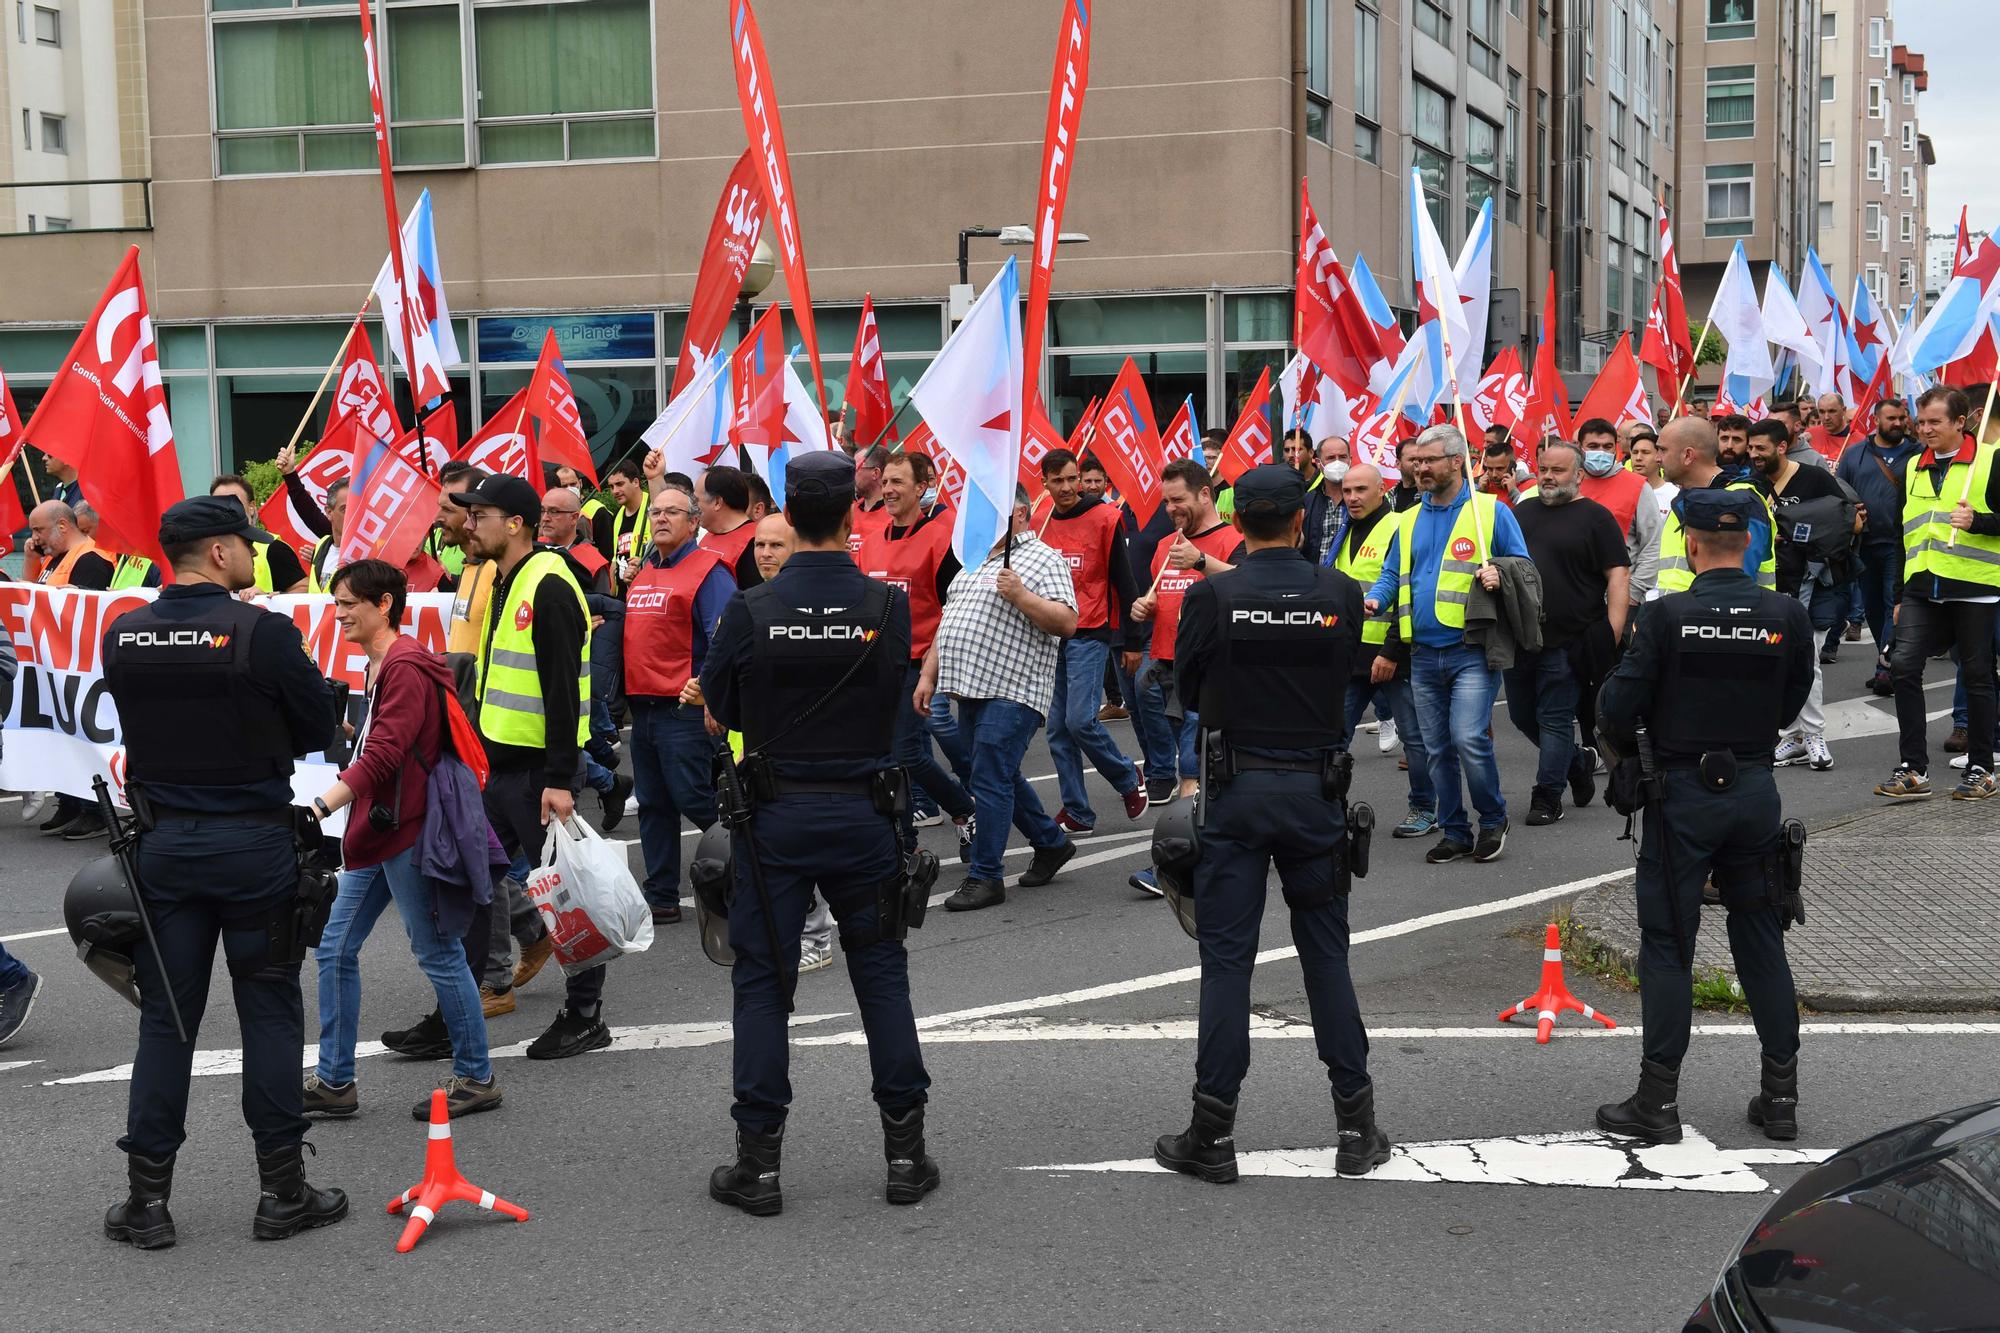 Manifestación de los trabajadores del metal en A Coruña